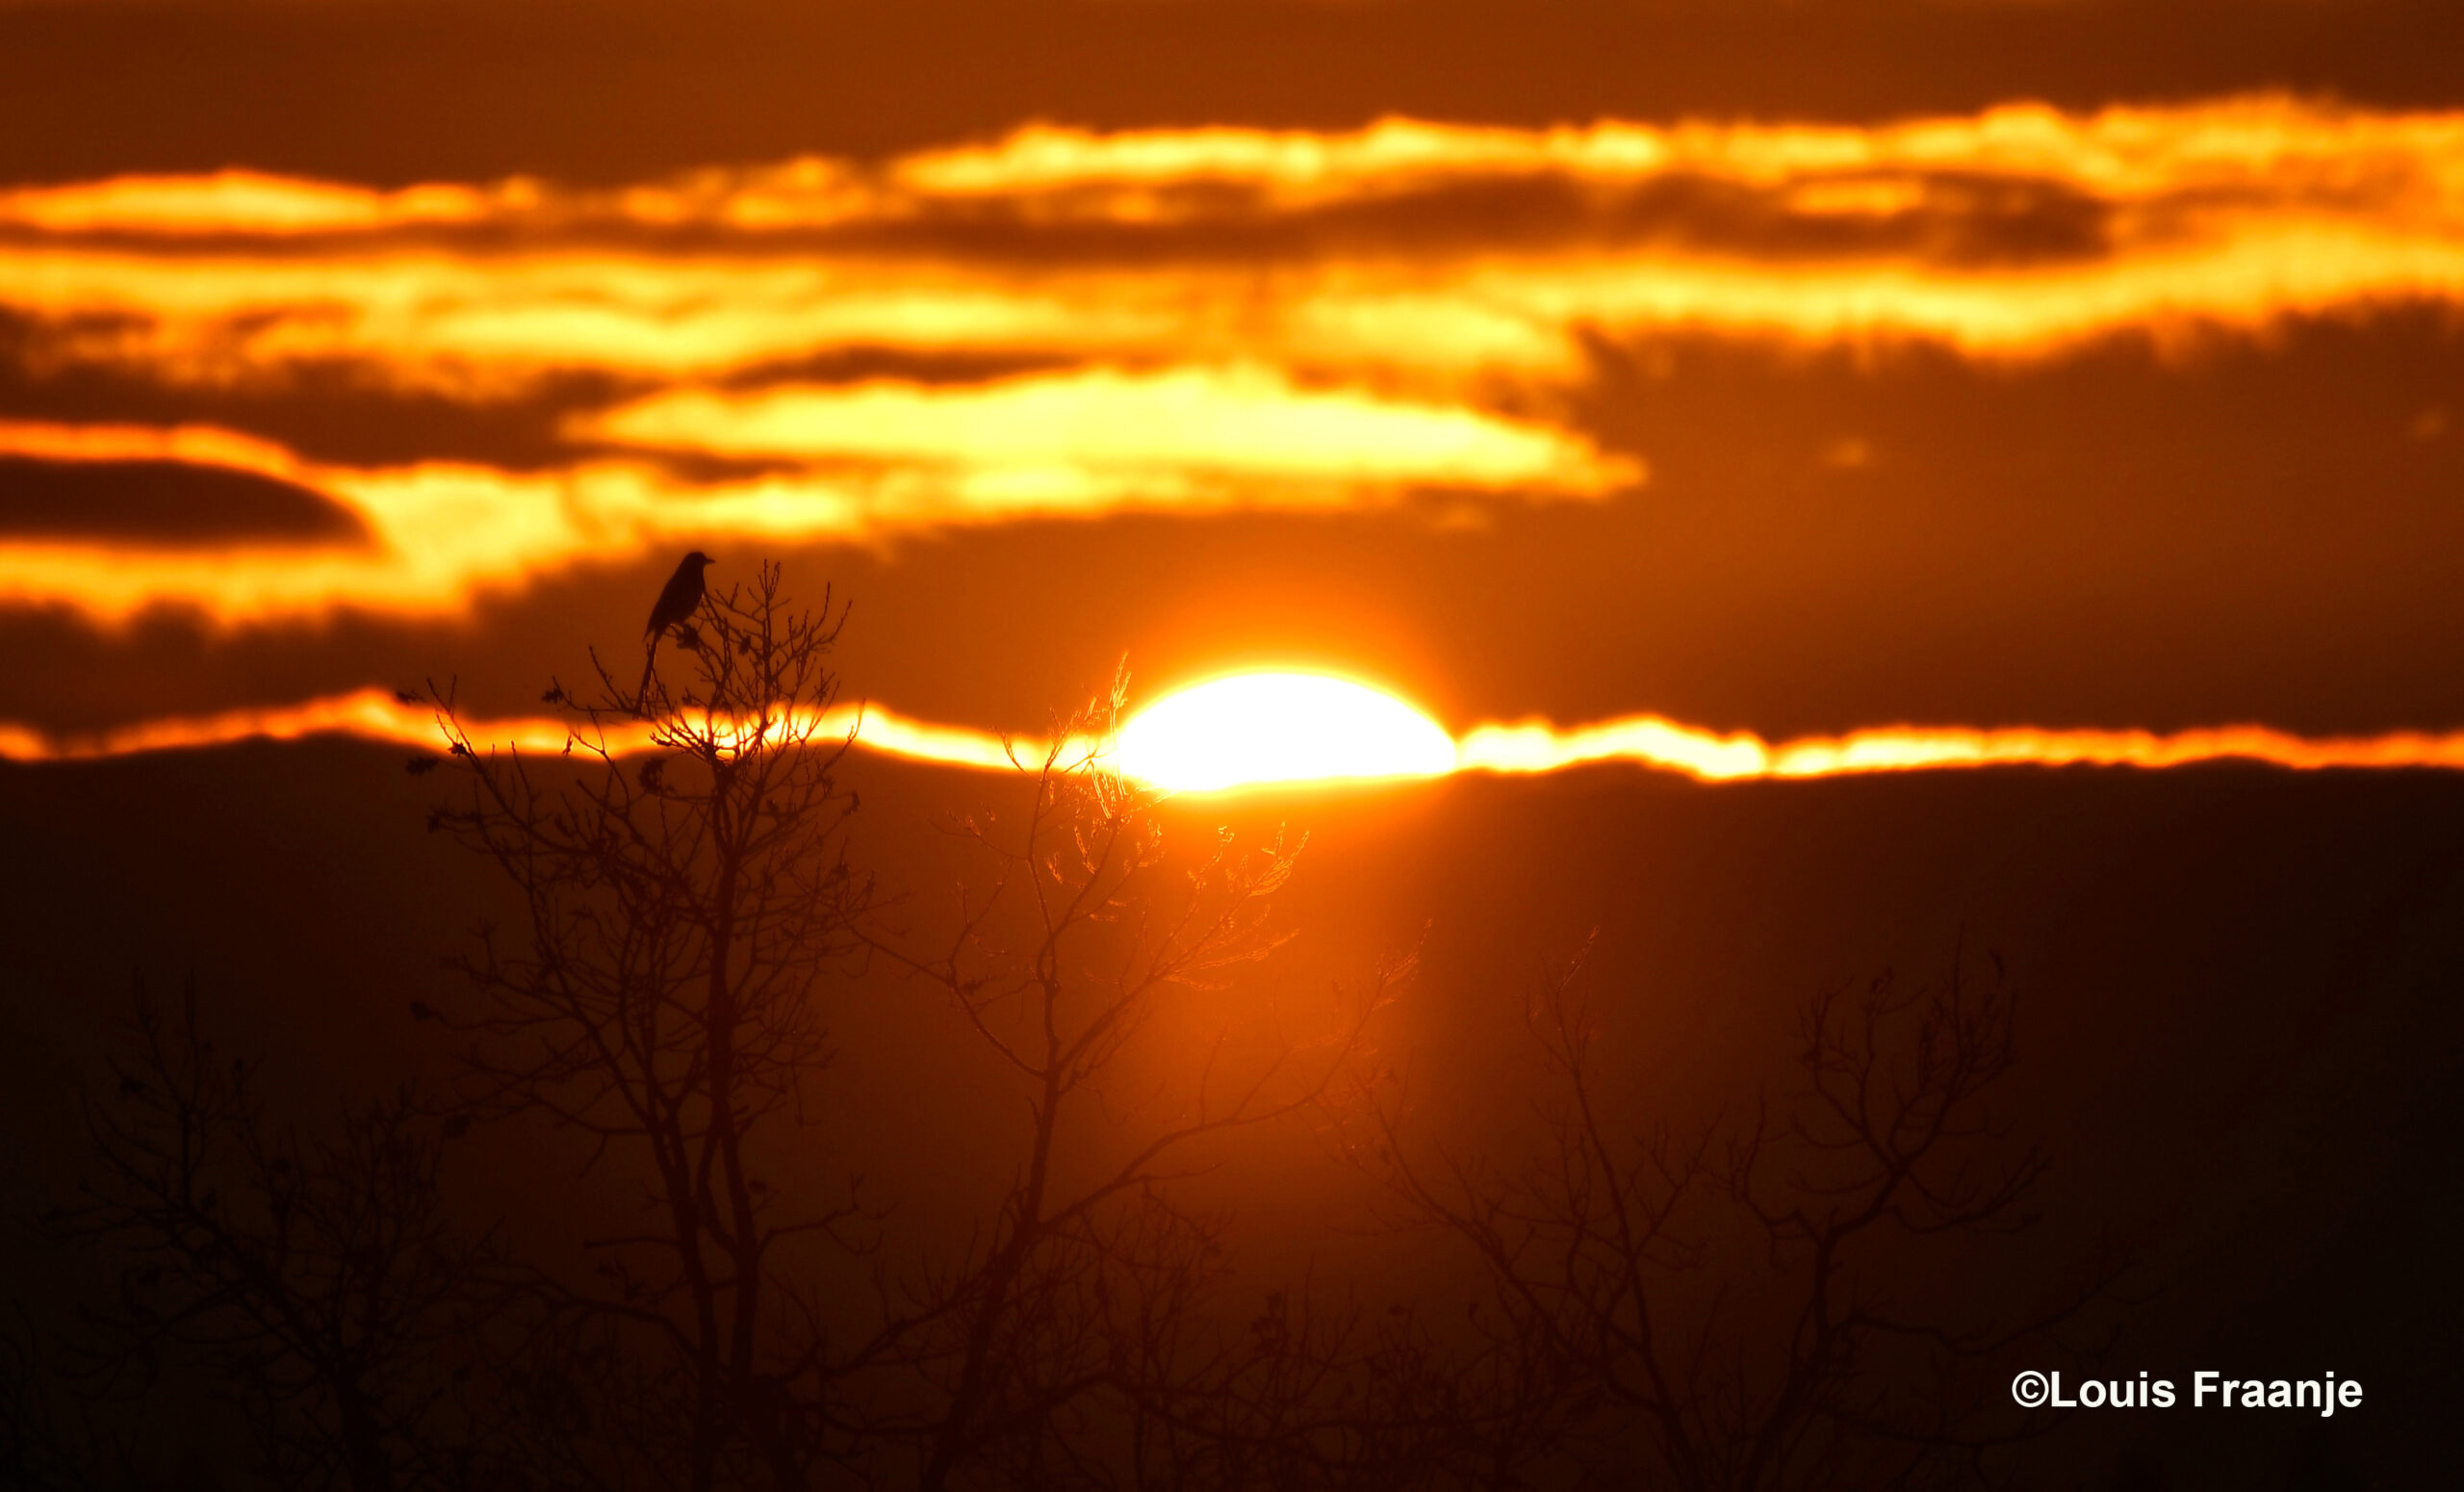 In de boomtop zat een ekster, blijkbaar te wachten tot de zon boven de kim verscheen - Foto: ©Louis Fraanje